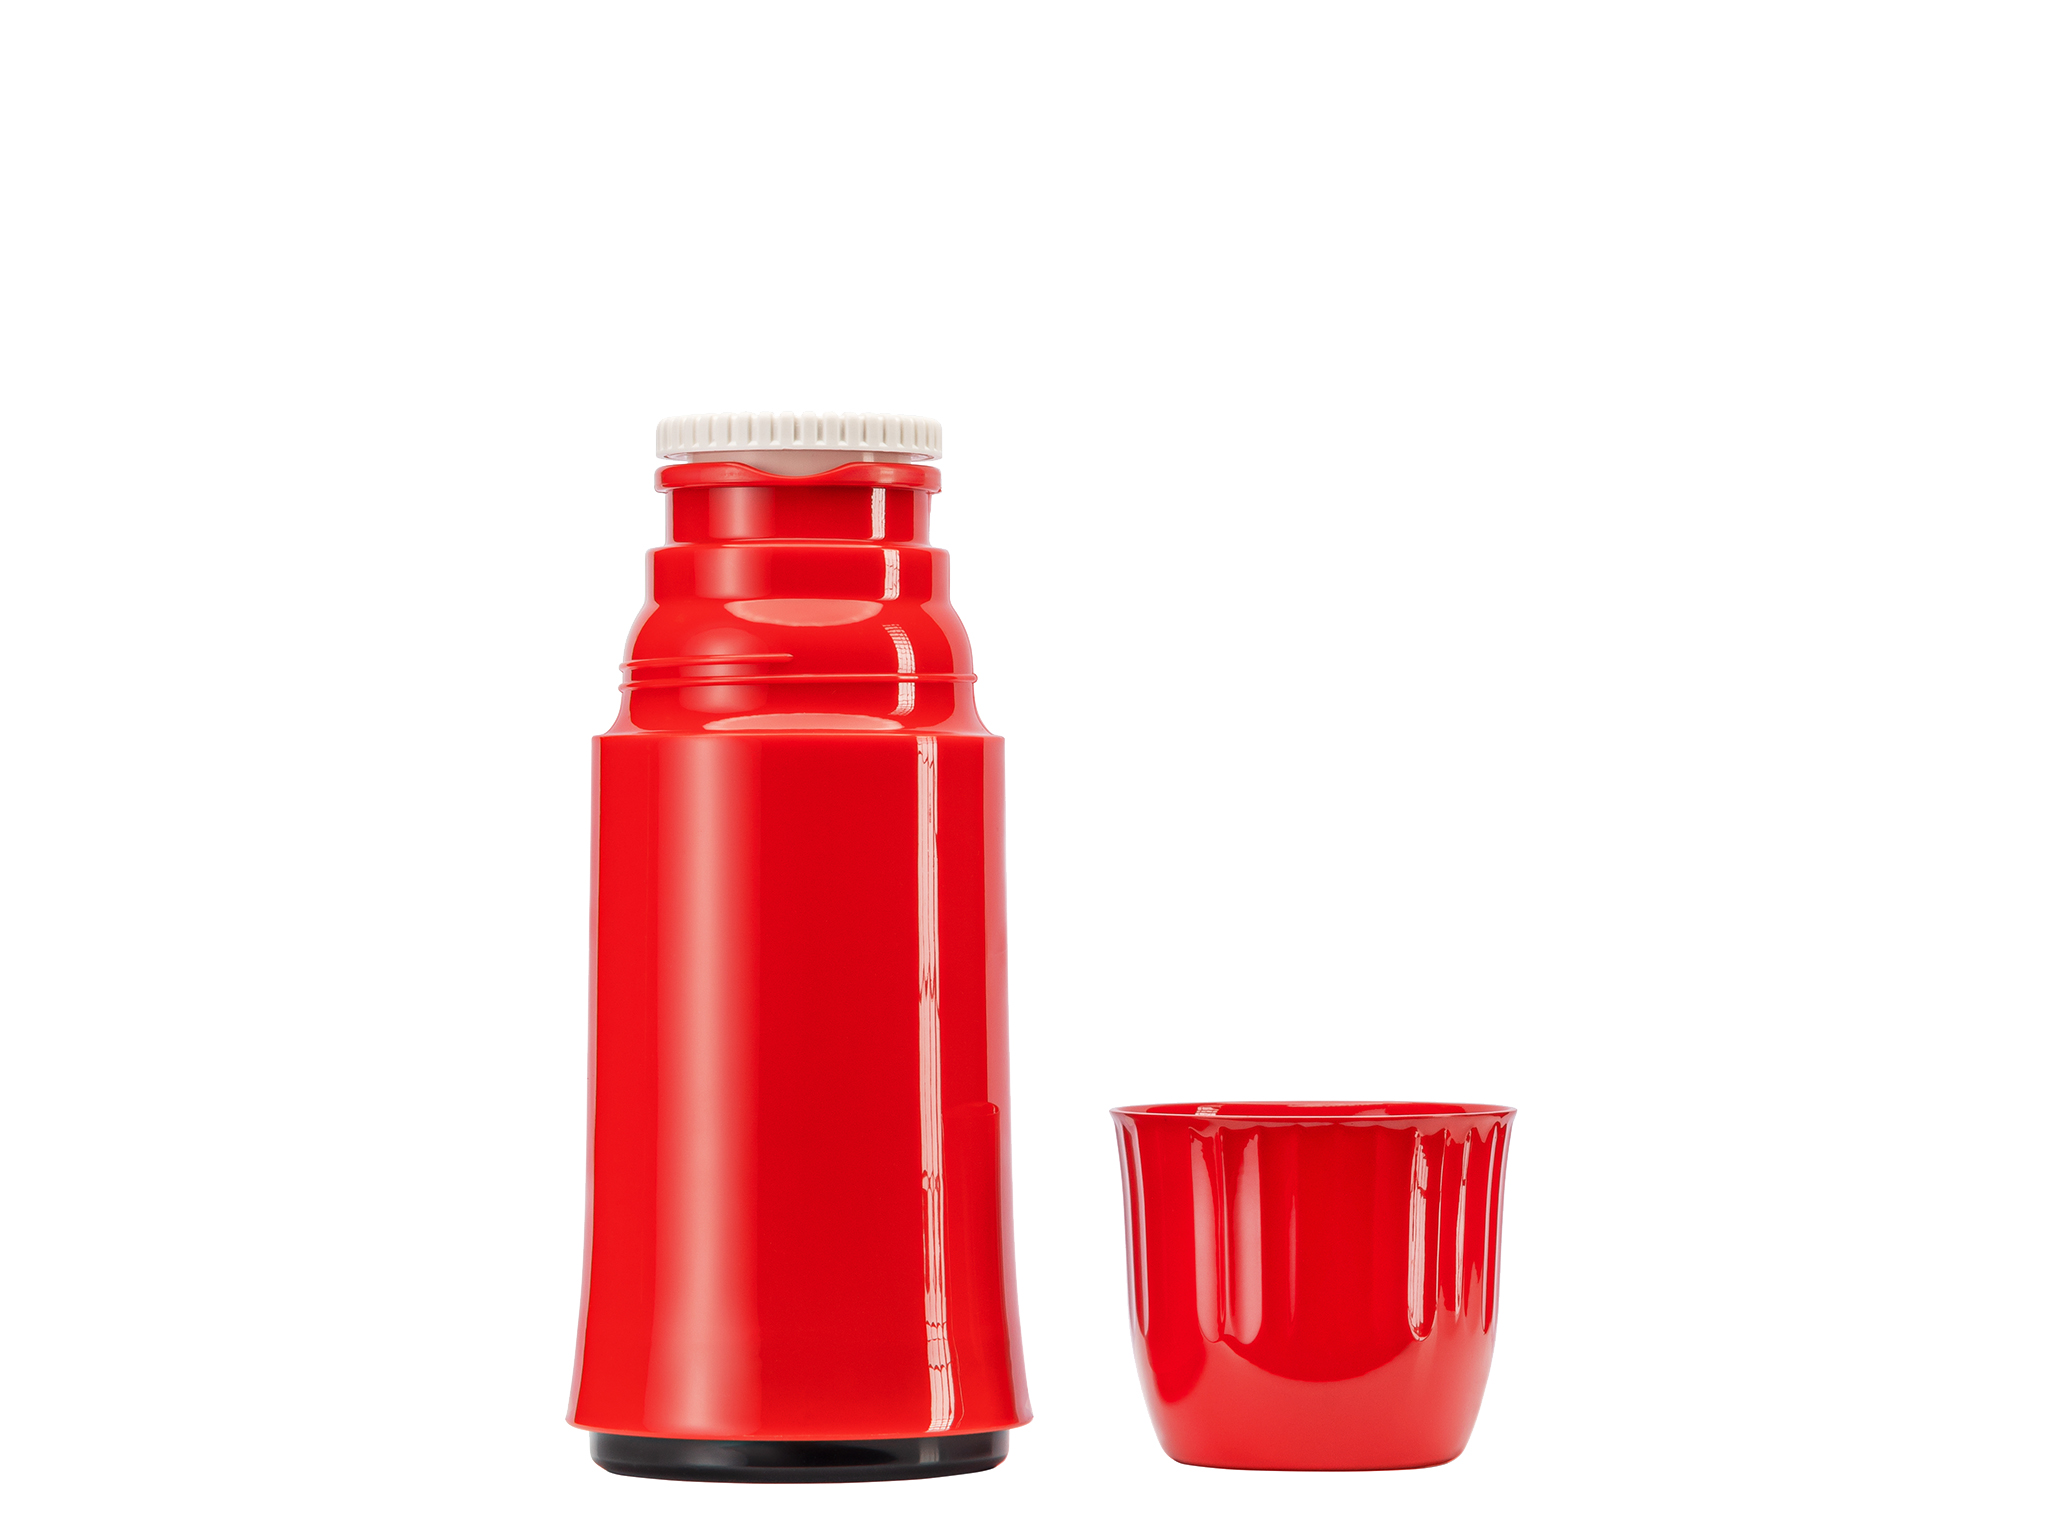 5461-011 - Vacuum flask red 0.25 L ROCKET - Helios